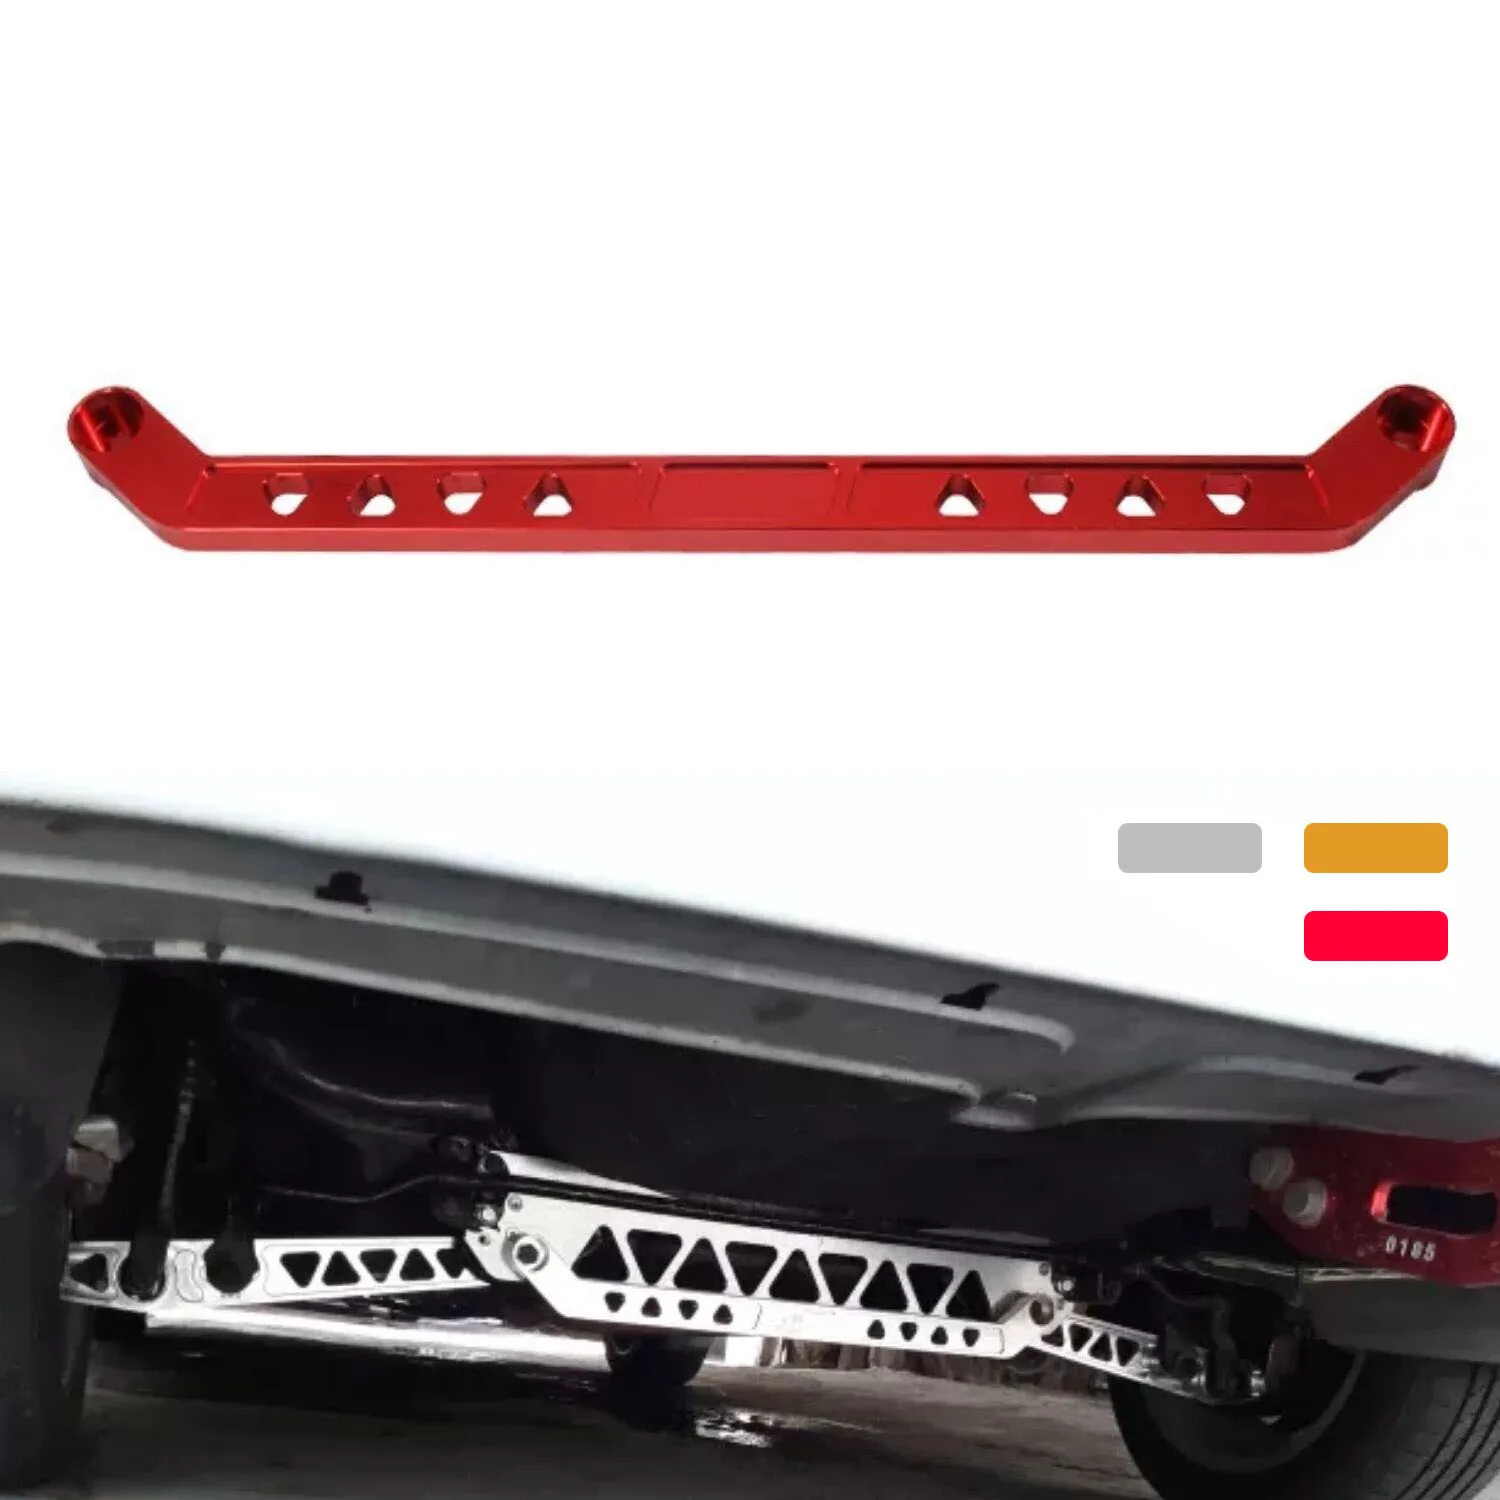 

Billet Aluminum Rear Lower Subframe Tie Bar for Honda Civic EK DX Si 96-00 Red